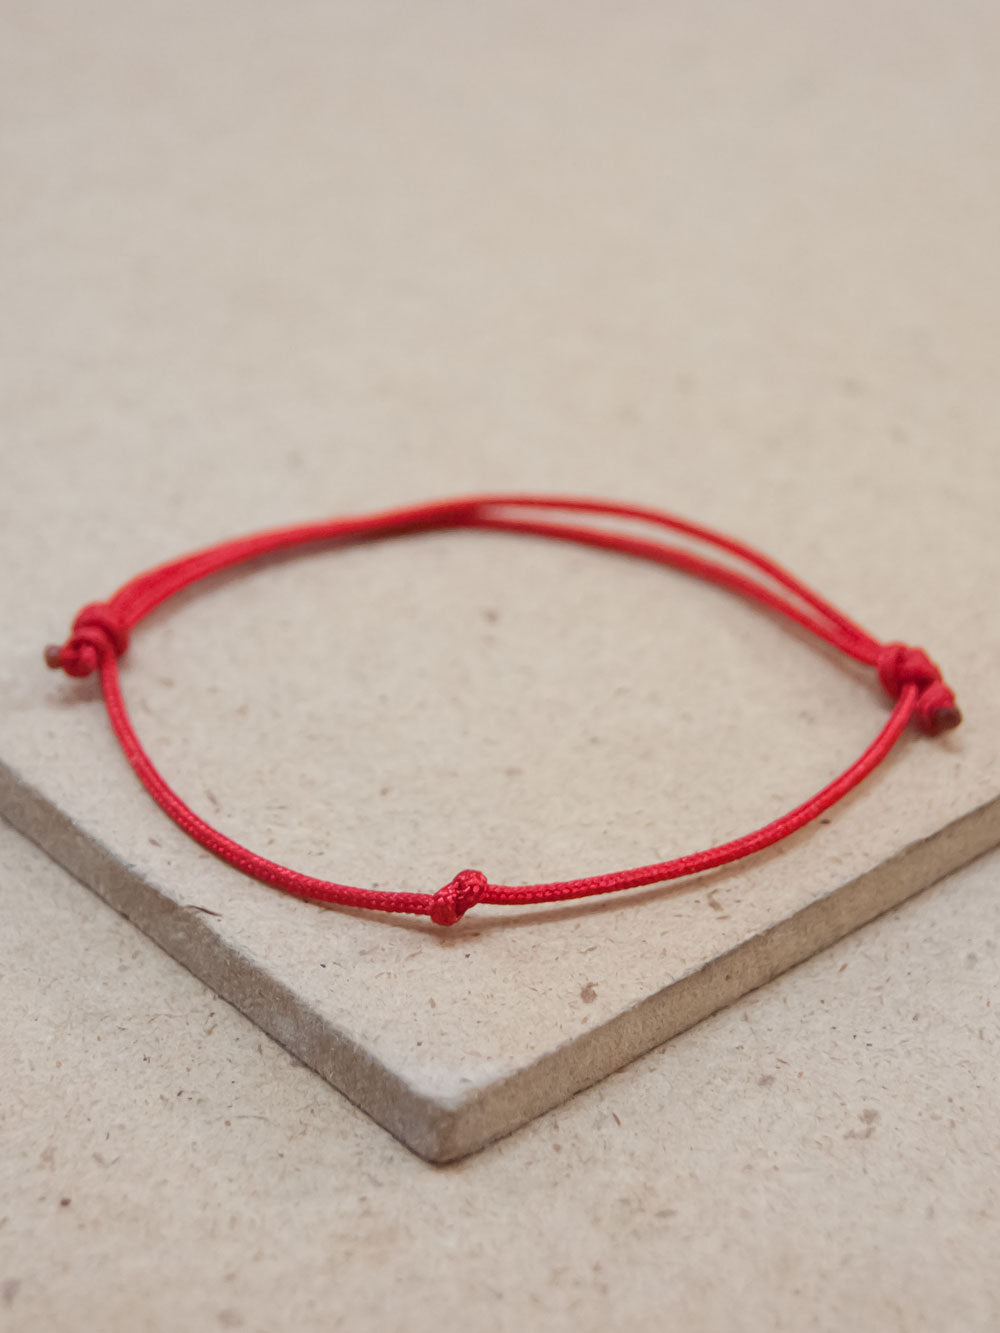 Tibetan Peace Red string Adjustable bracelet